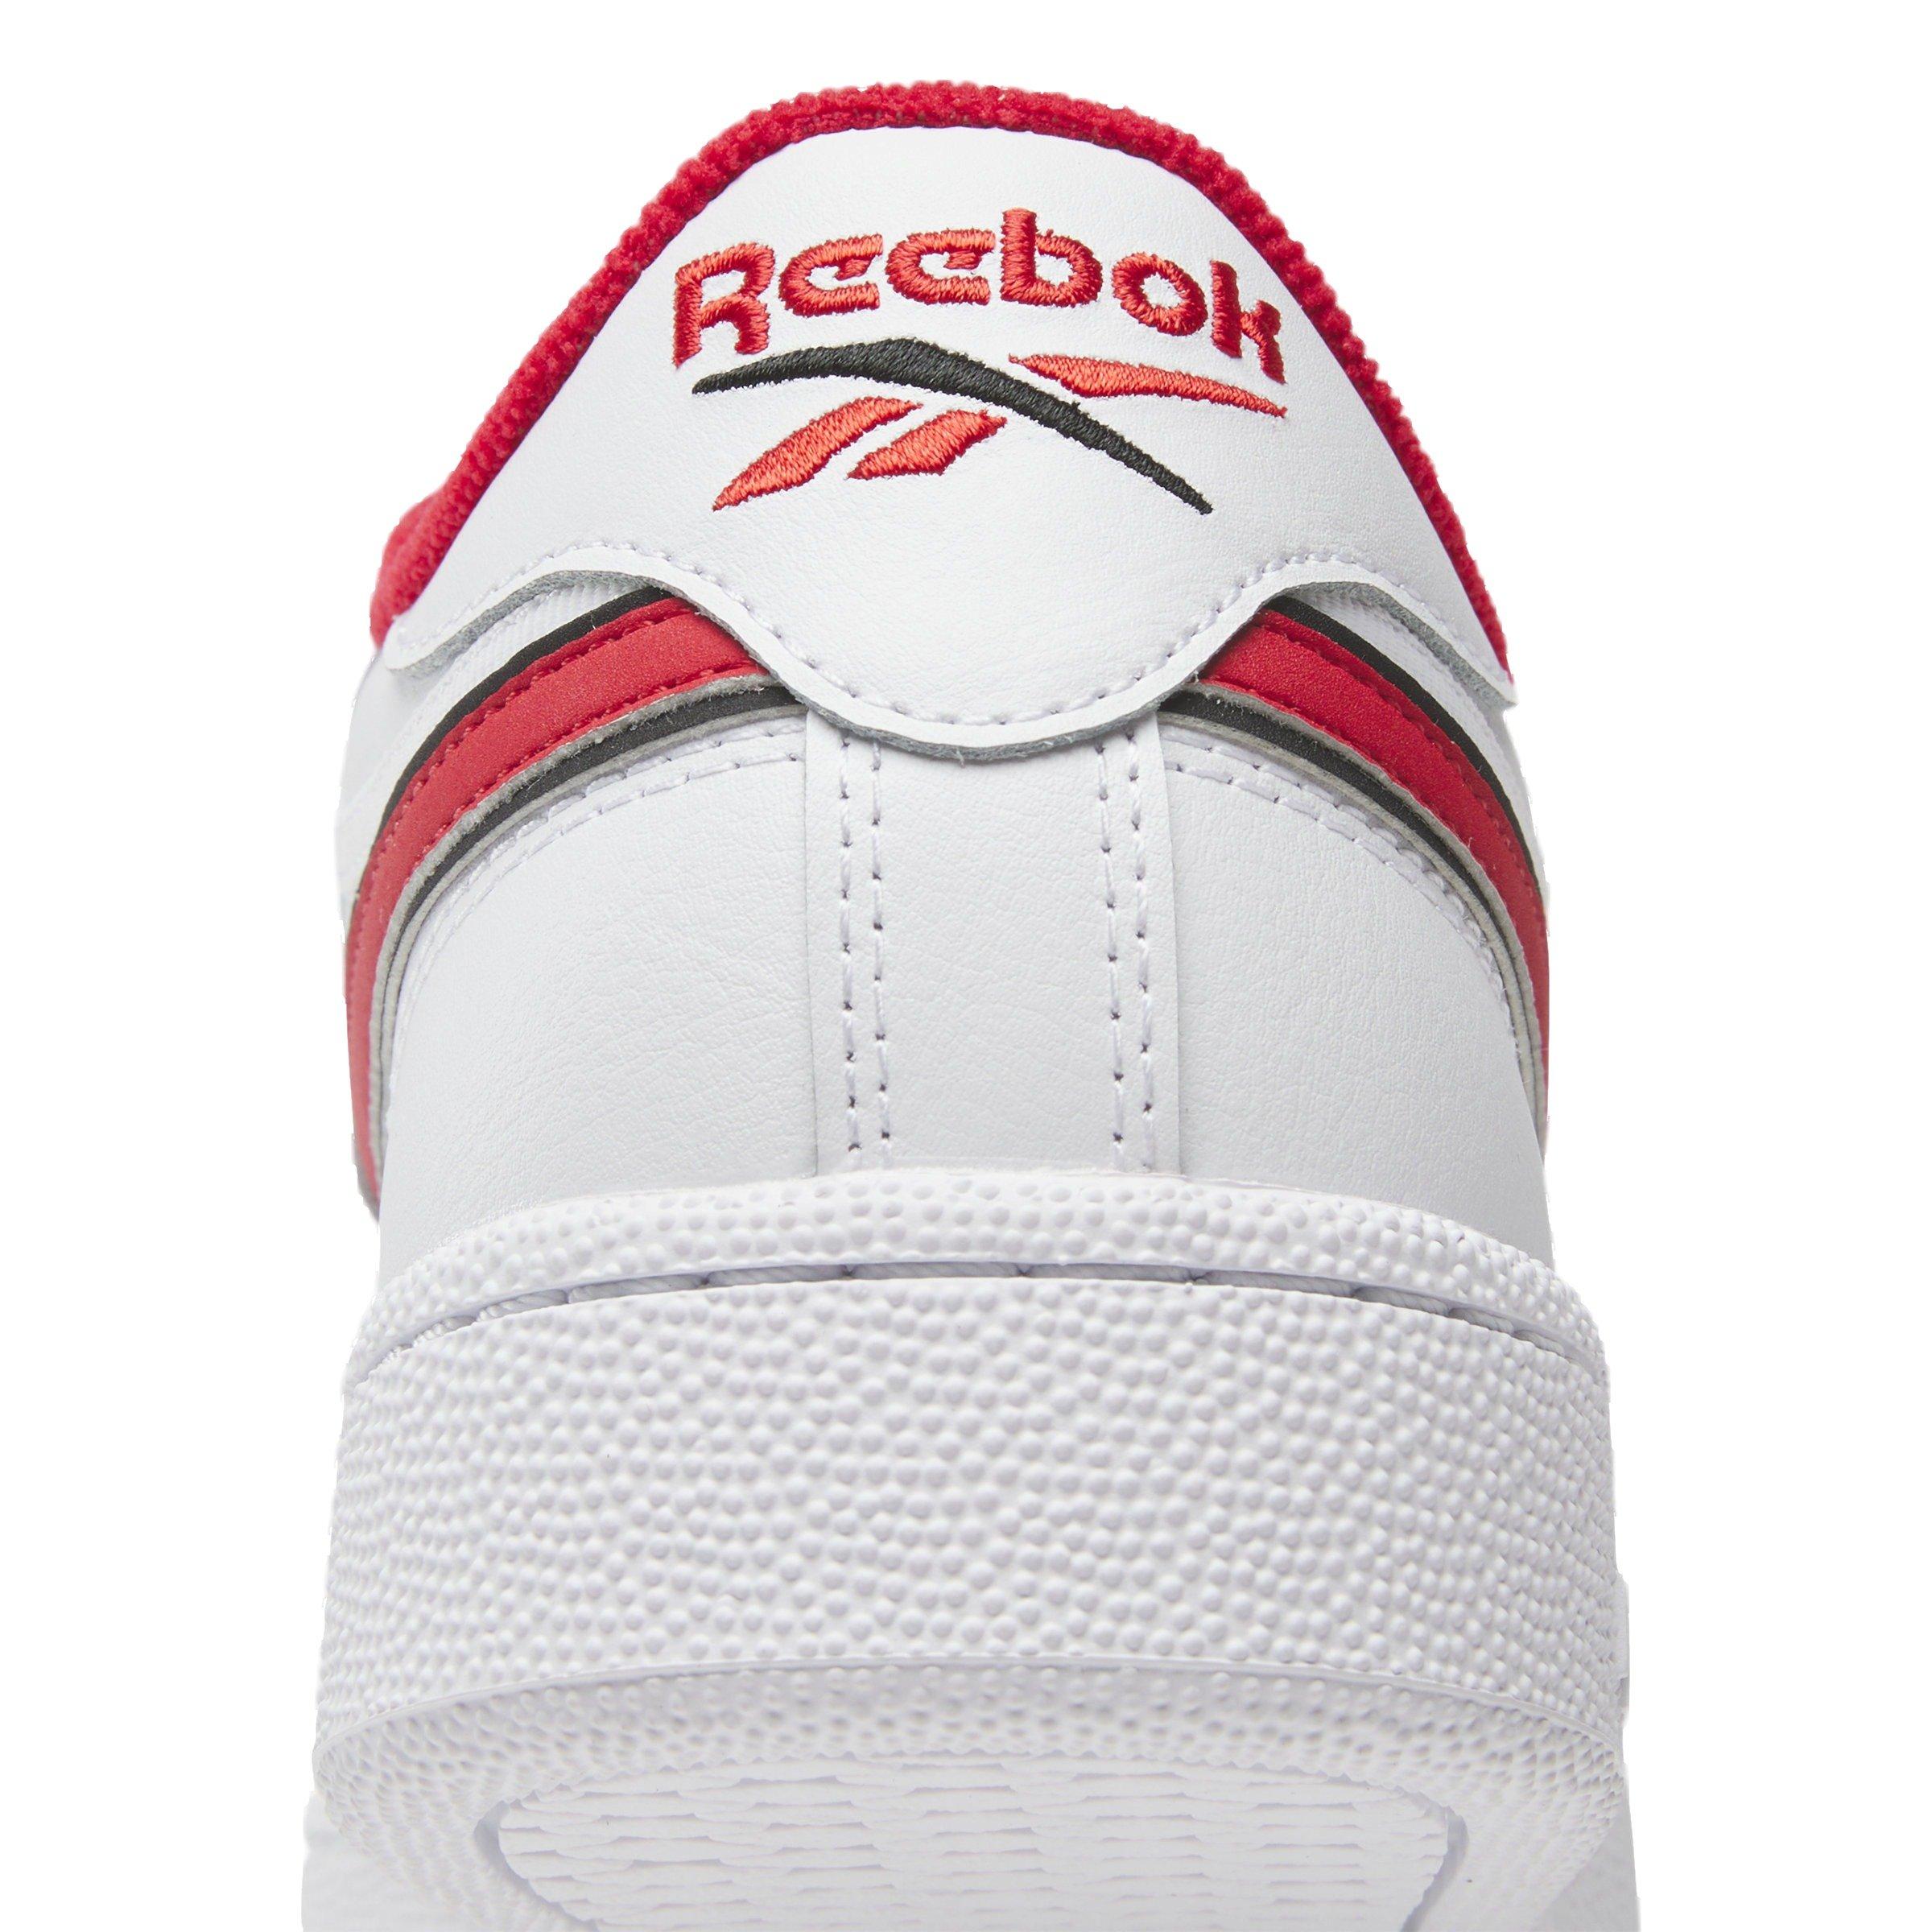 Reebok Men's Club C Revenge Sneaker, White/Vector Red